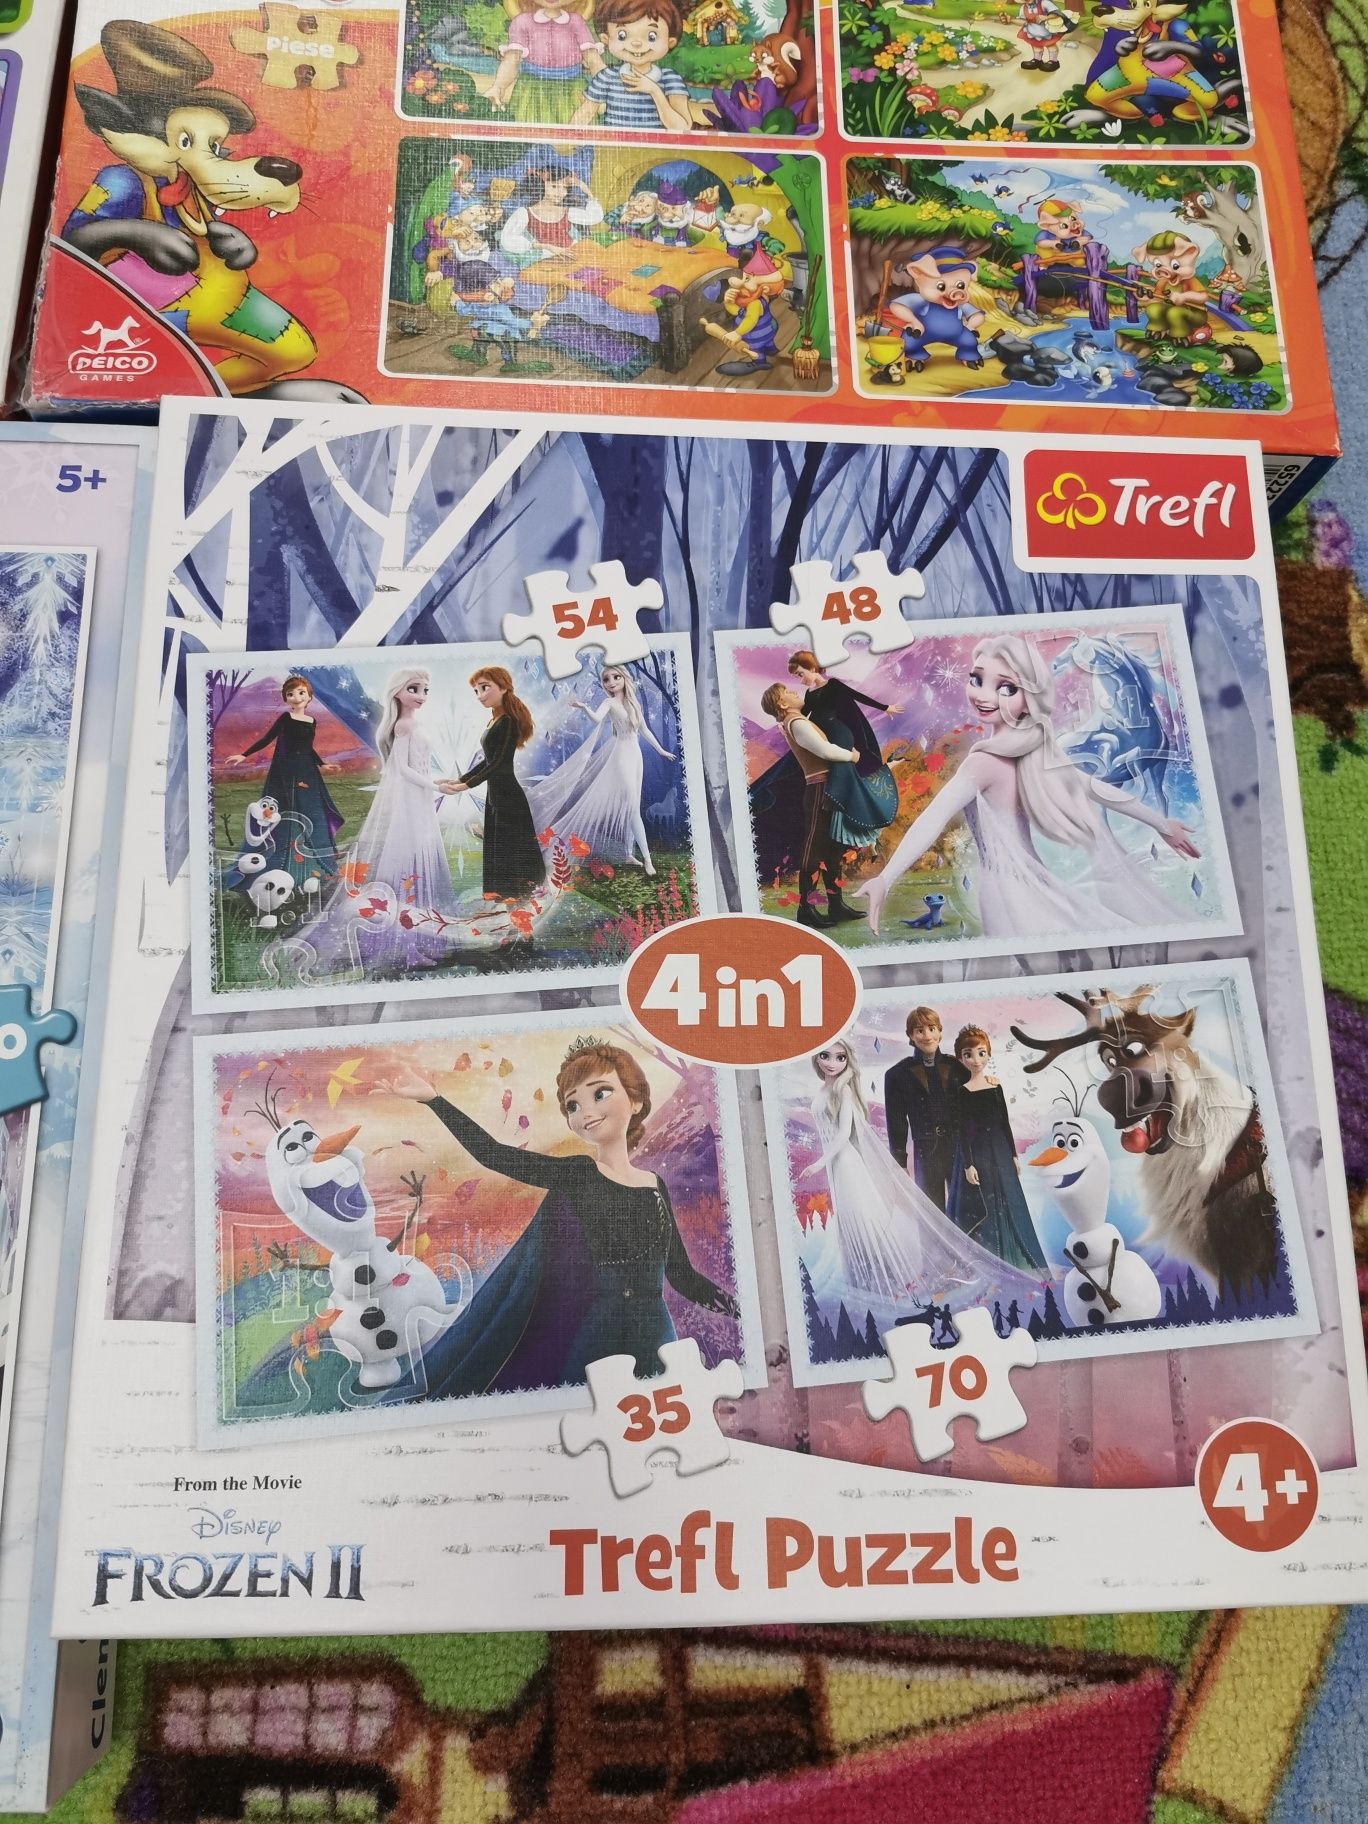 Puzzle povesti, memo, cuburi Frozen, puzzle